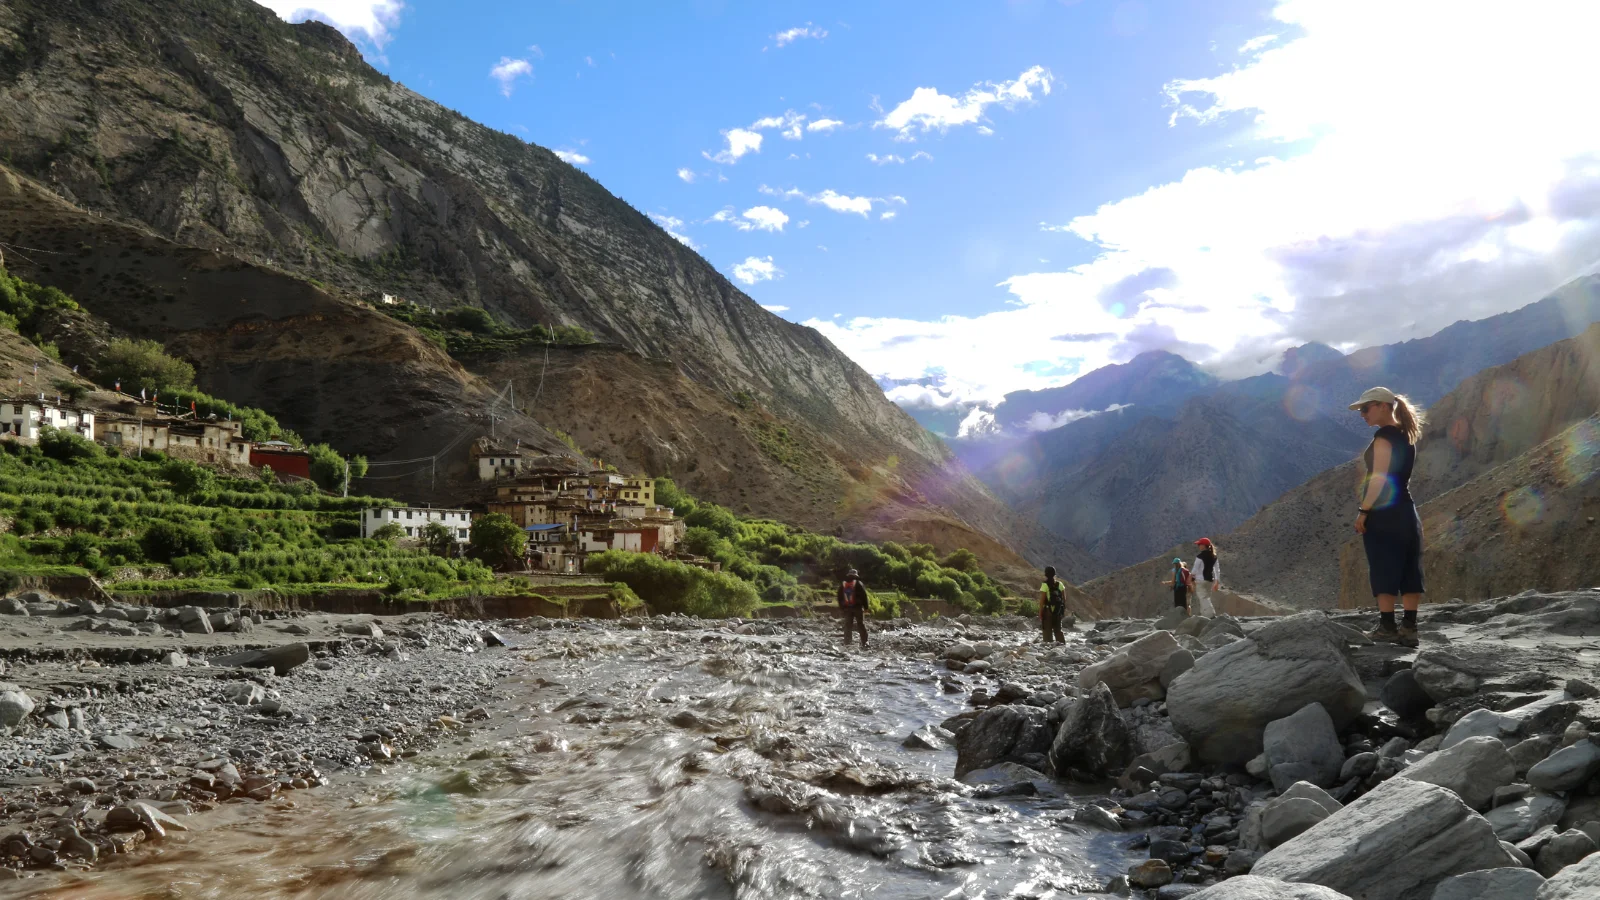 JMEM-Missionare stehen in der Nähe eines Flusses im ländlichen Nepal, während eine Person den Fluss überquert